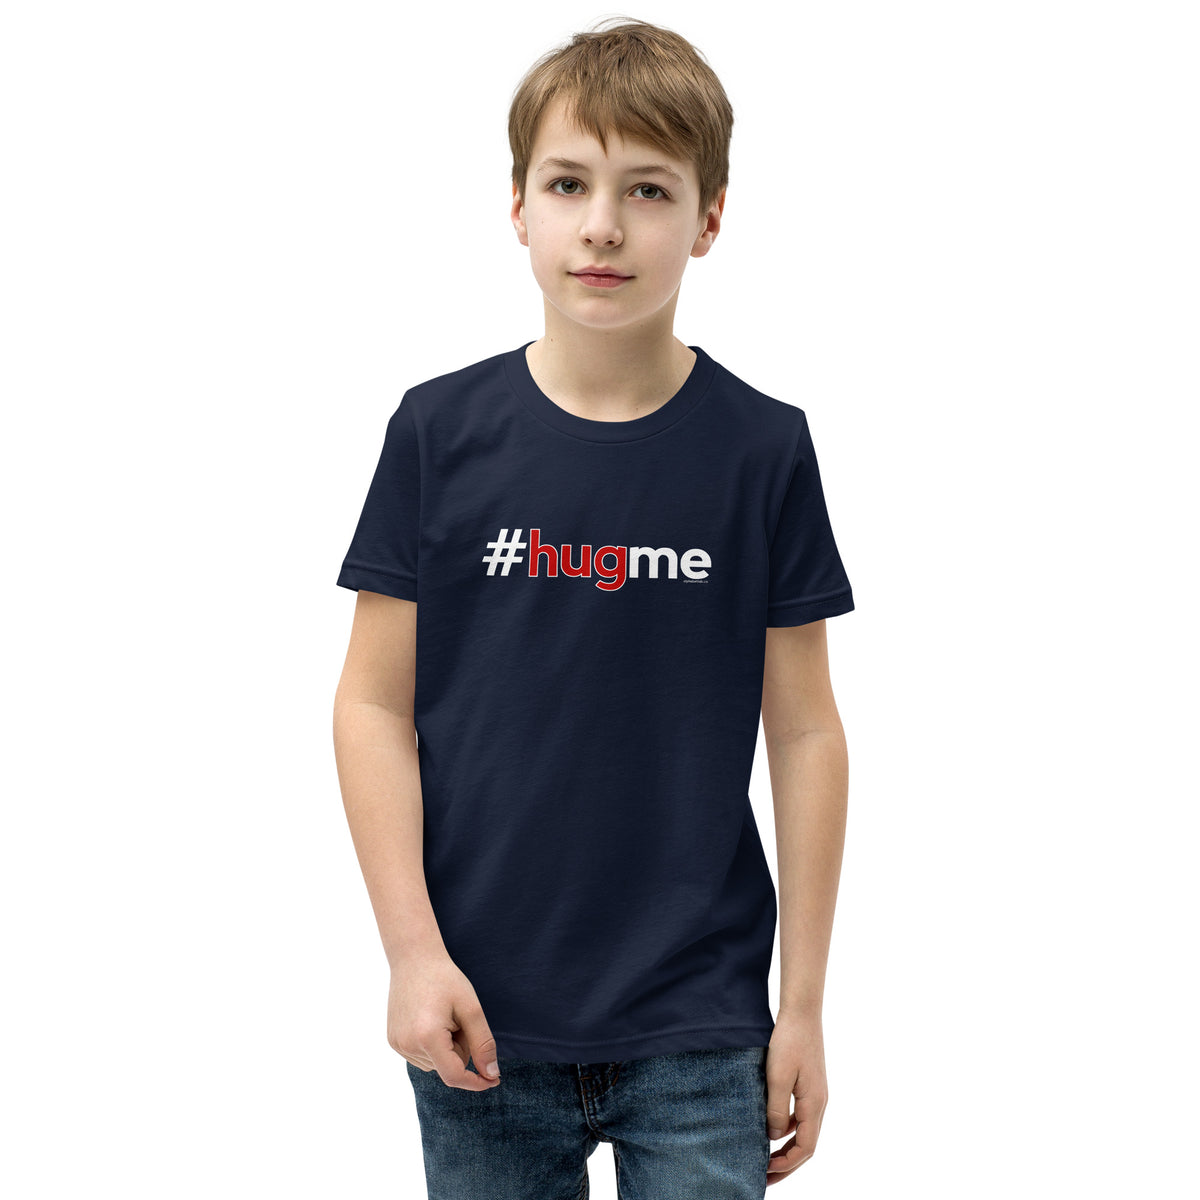 Hashtag Hug Me Kids Valentine’s Day T-Shirt